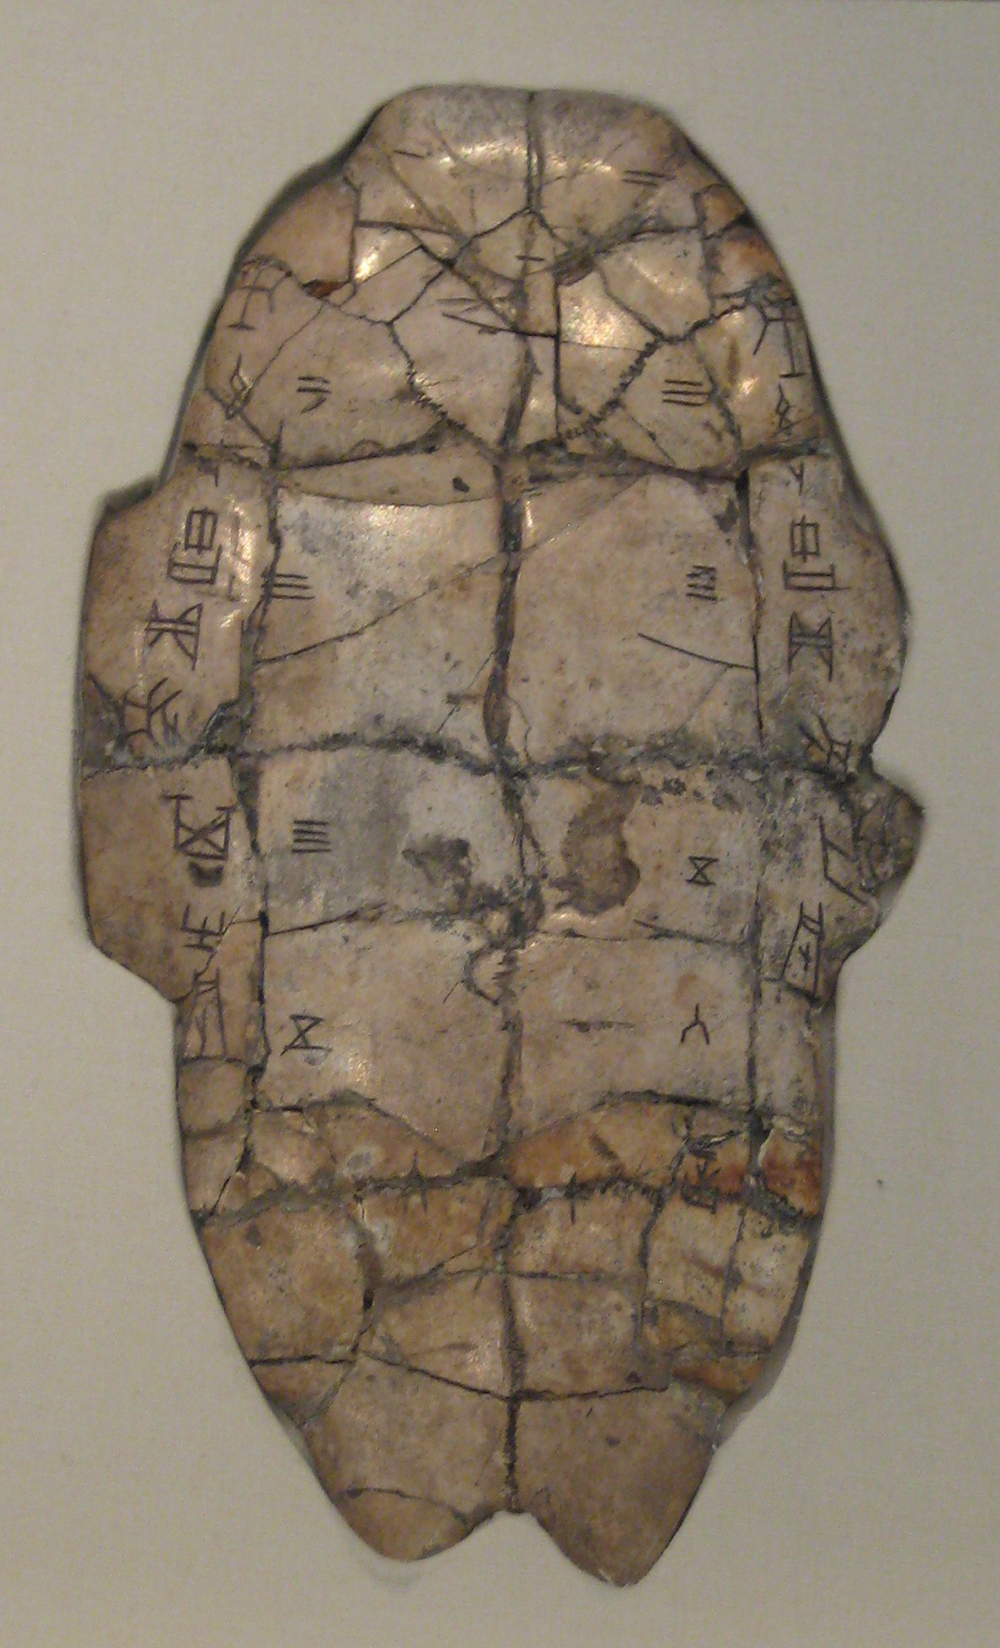 Tortoise plastron with divination inscription.